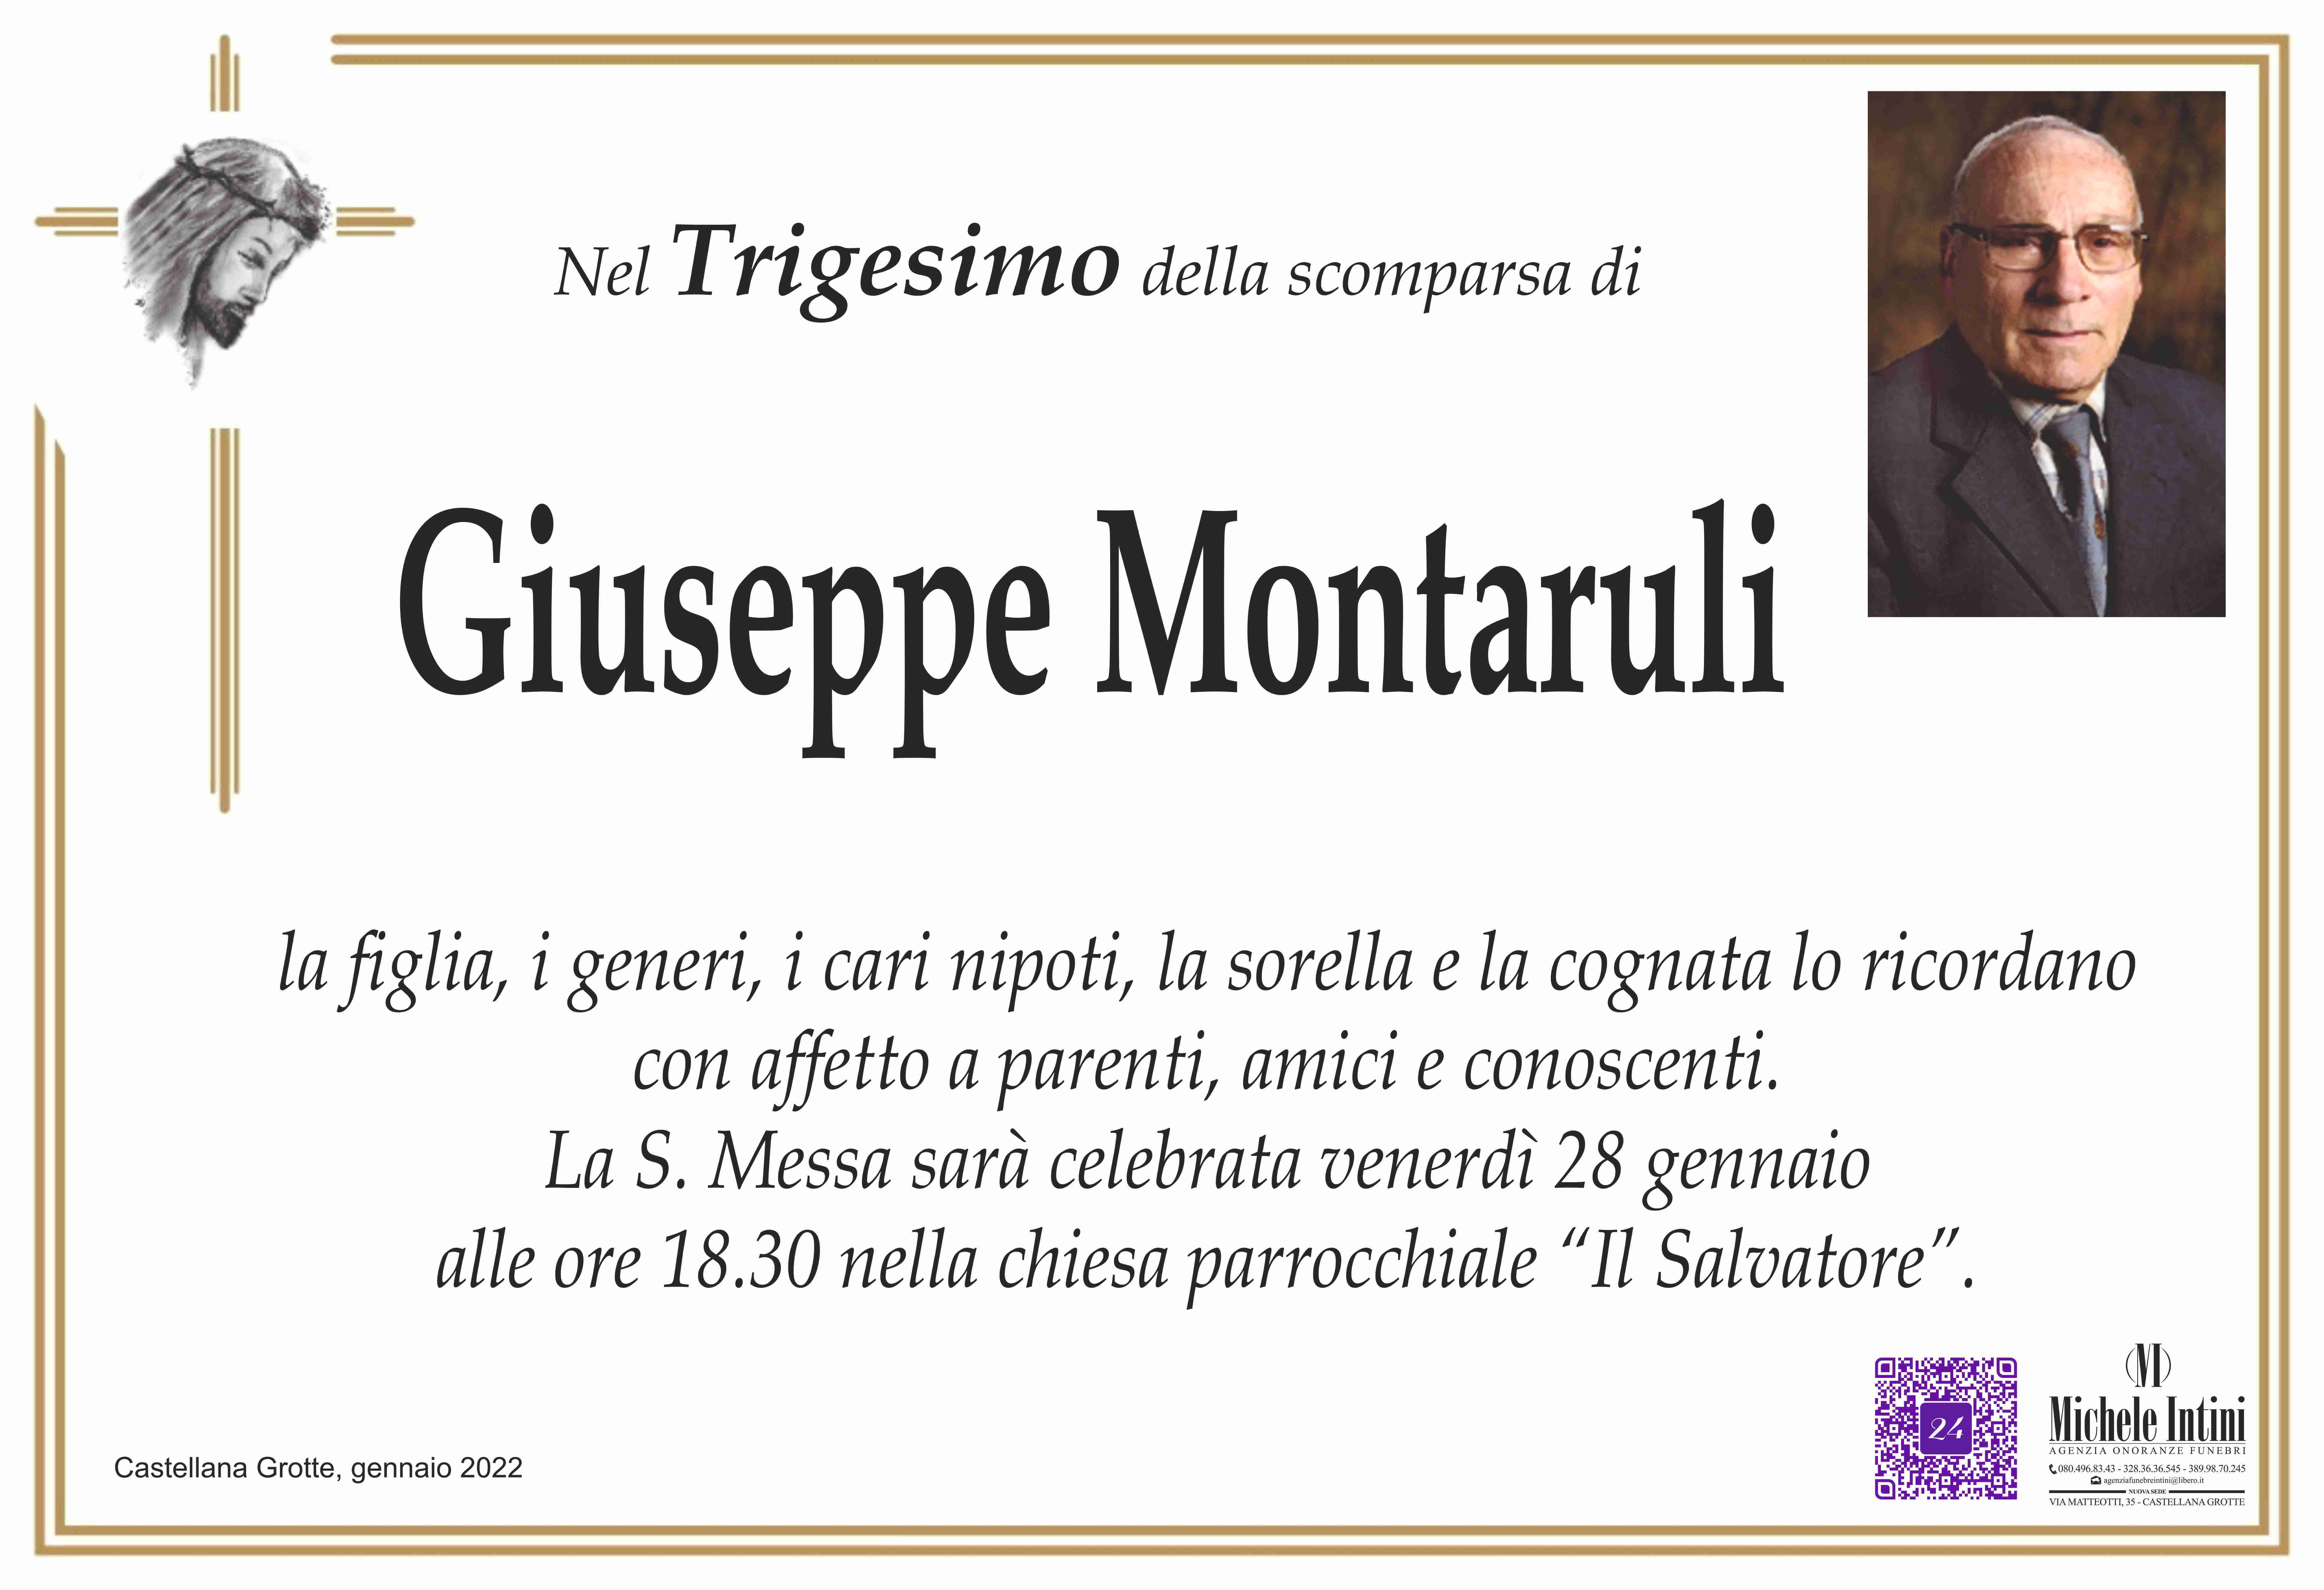 Giuseppe Montaruli